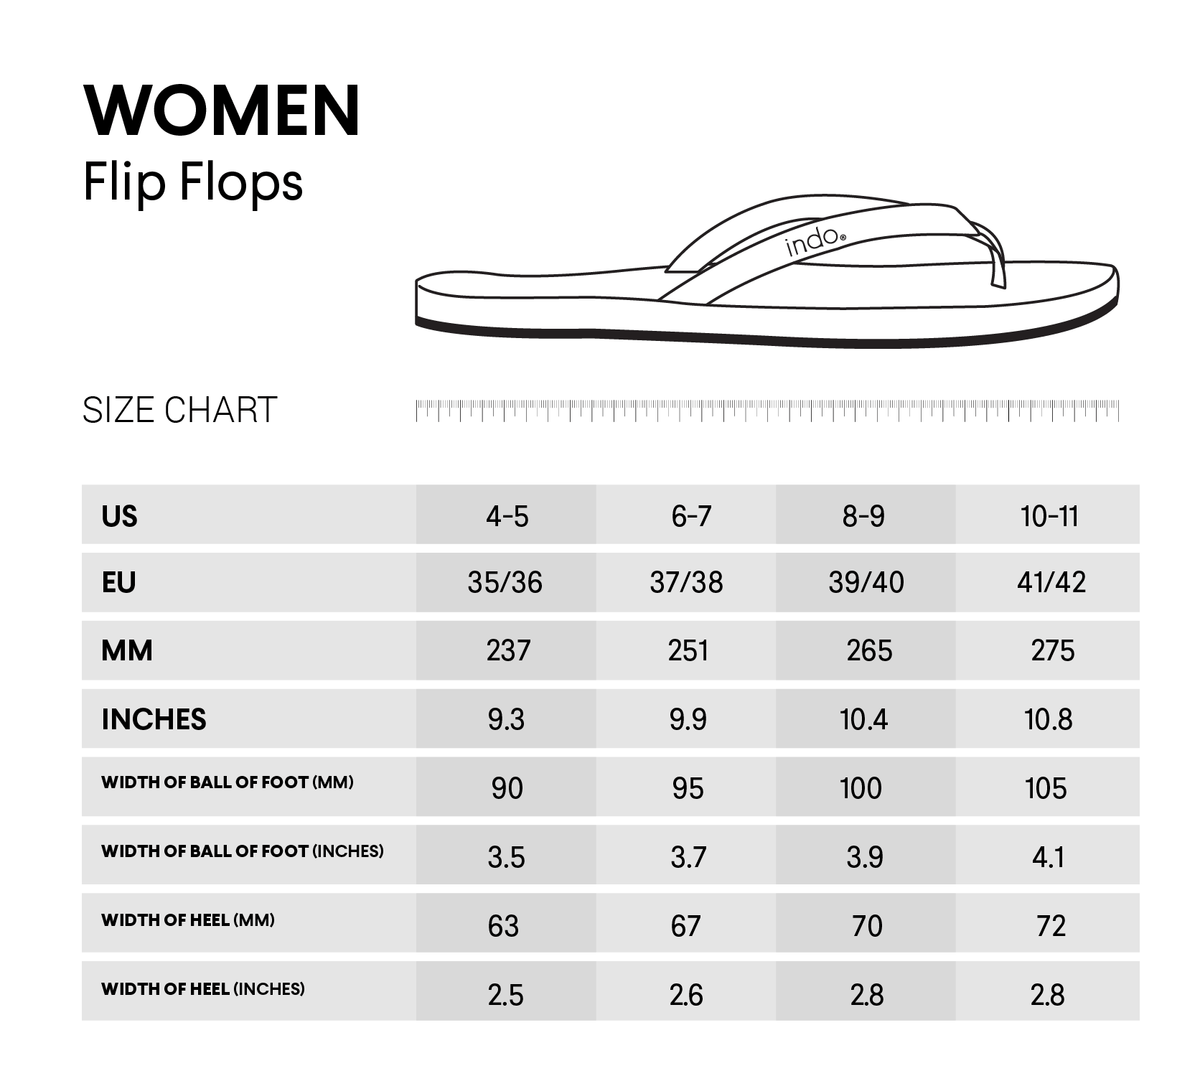 Women's Flip Flops - Soil/Soil Light - Indosole